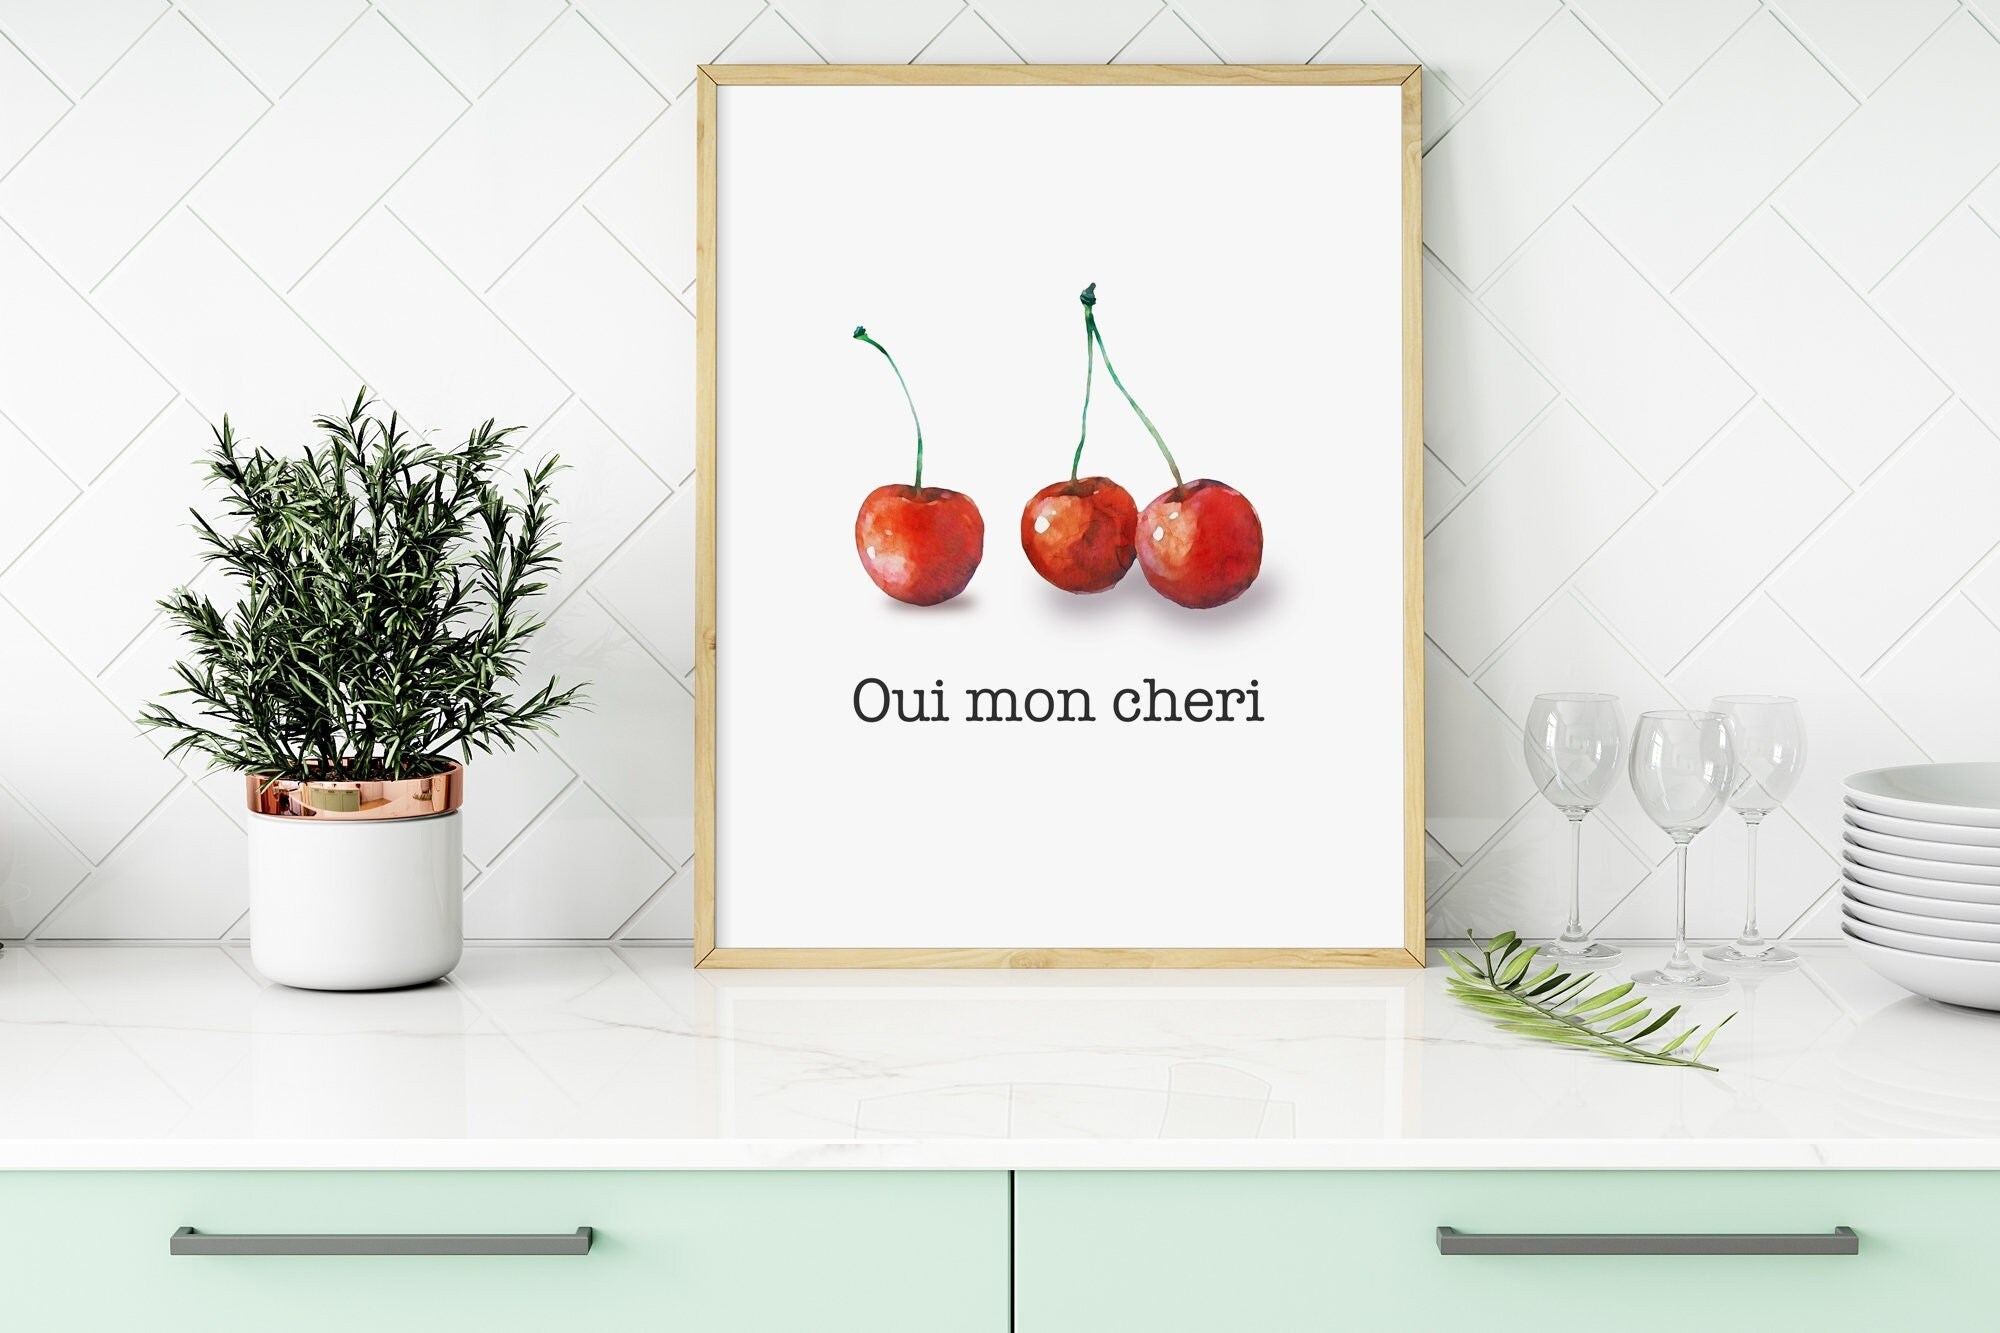 mundstykke mål Taktil sans Oui Mon Cheri Print Mon Cheri Quote Print Cherries Wall Art - Etsy